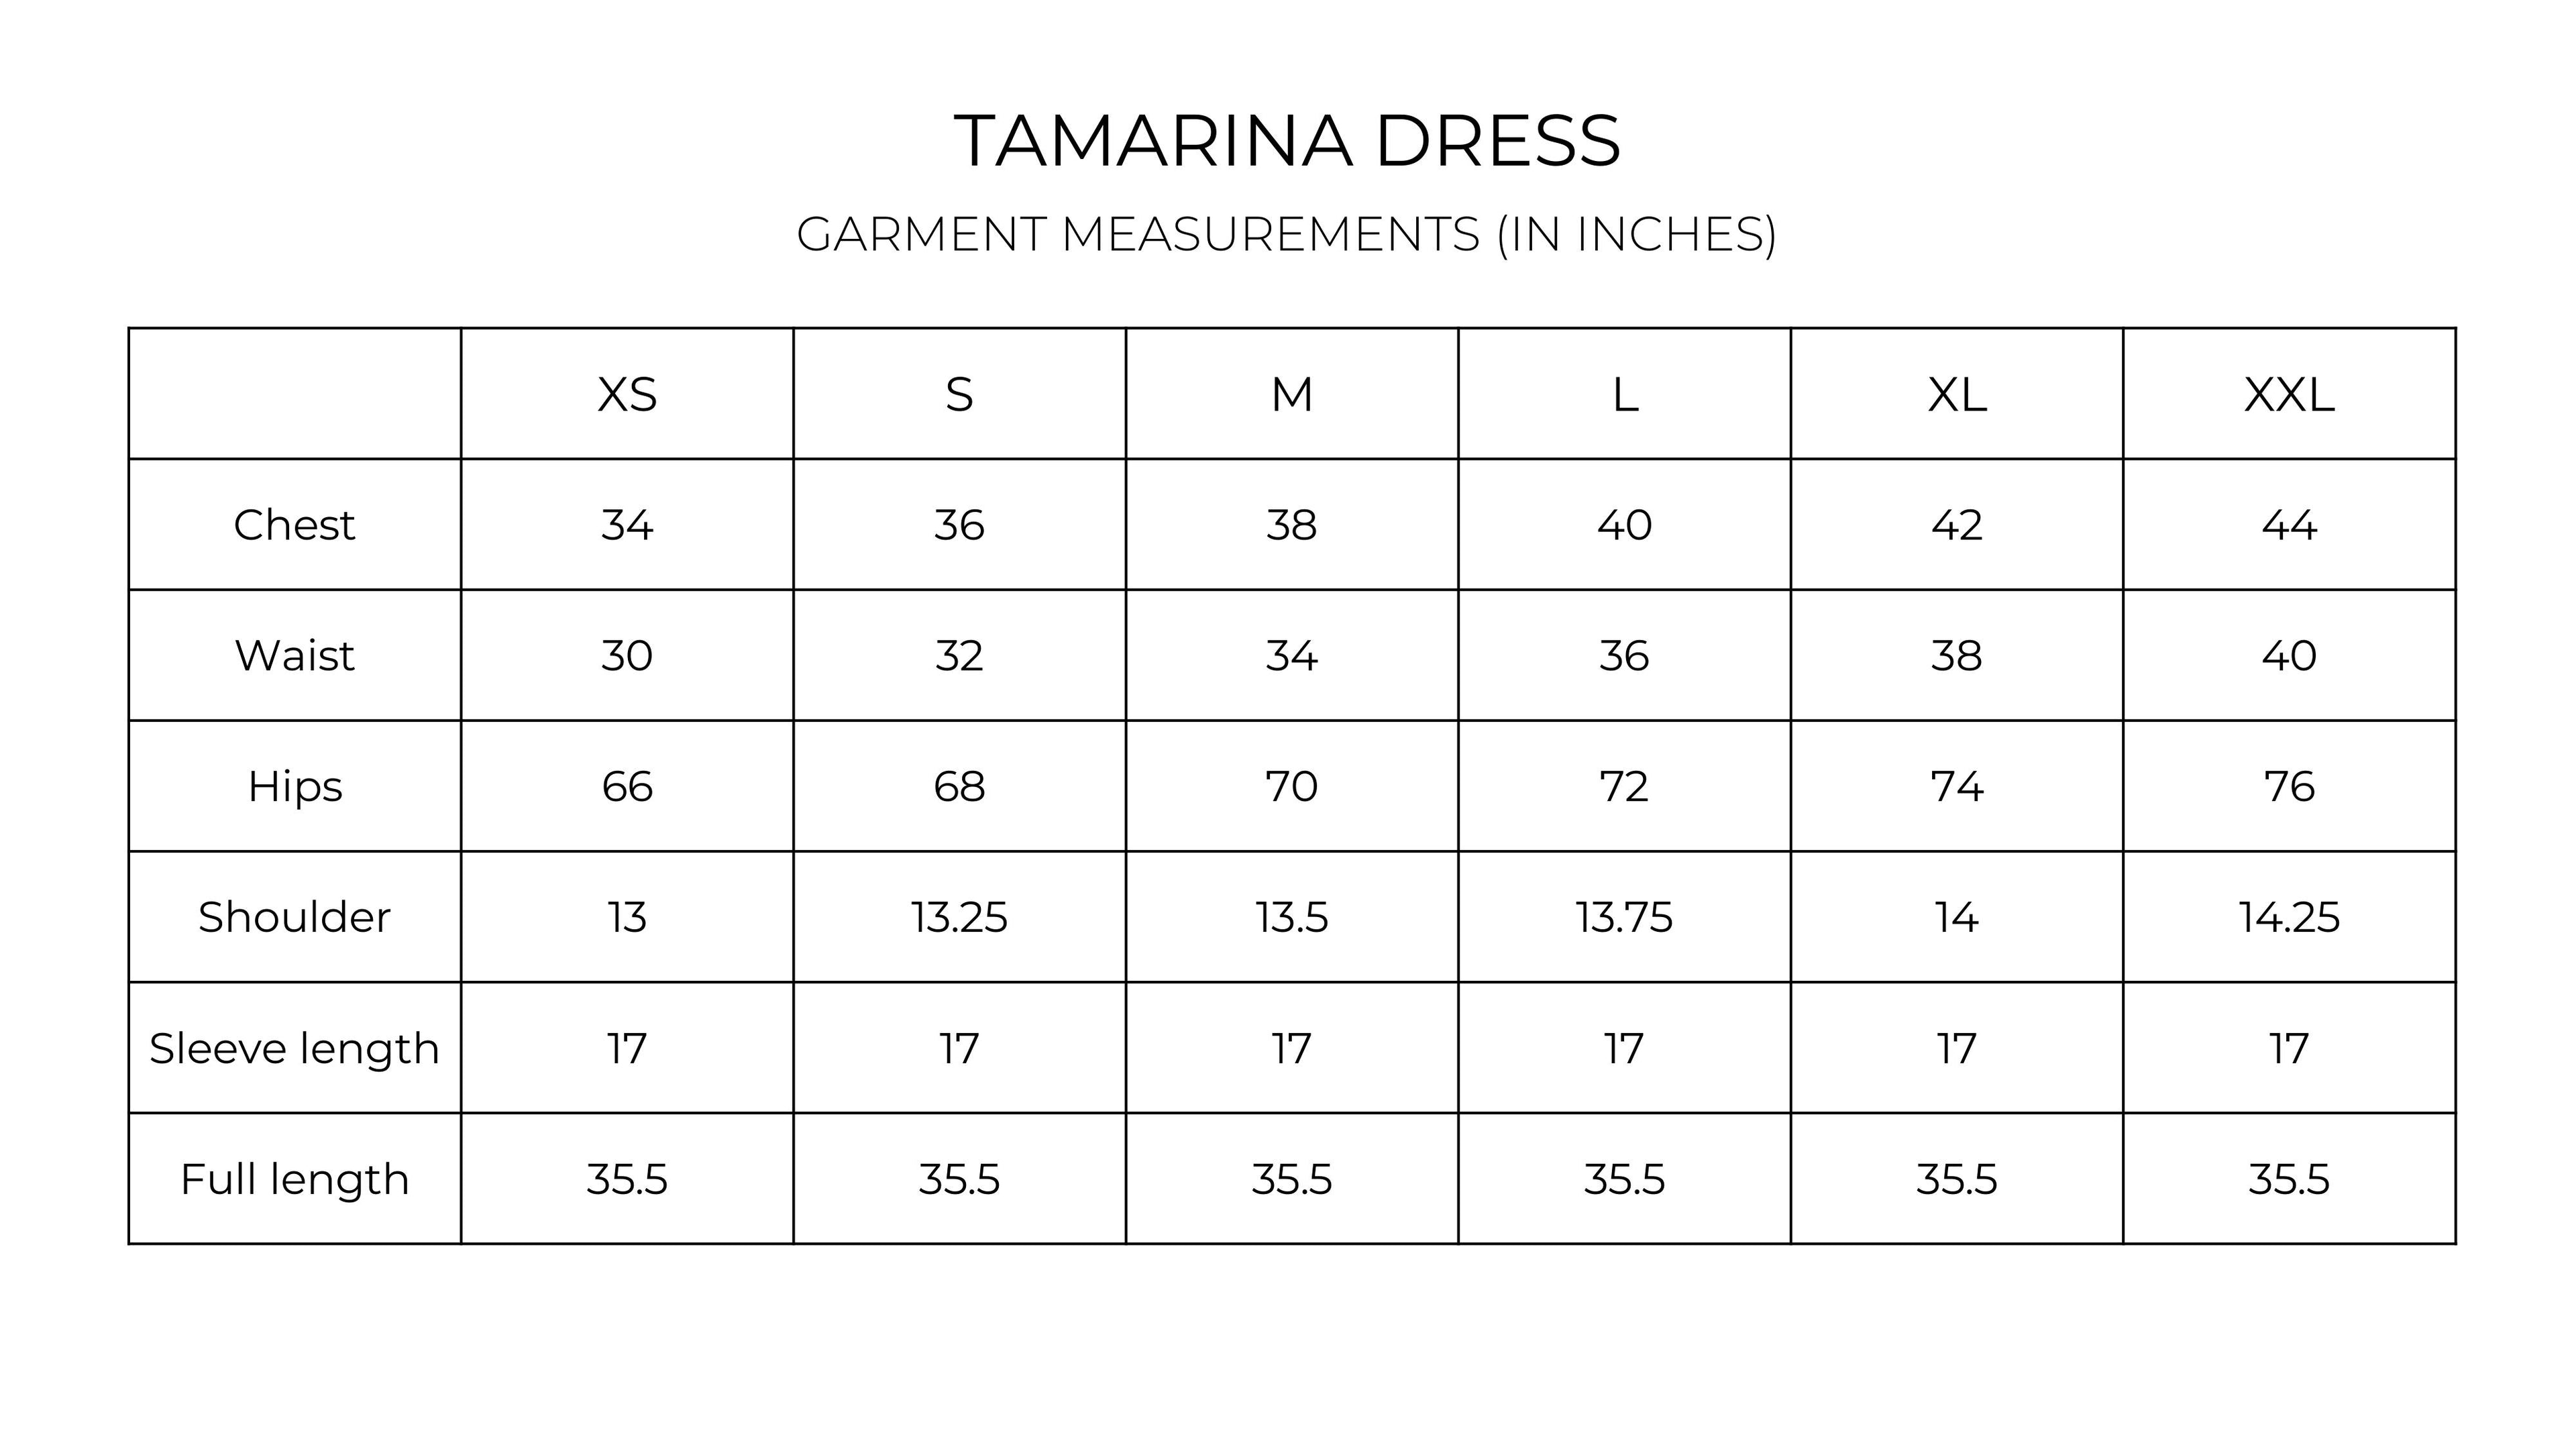 Tamarina Dress